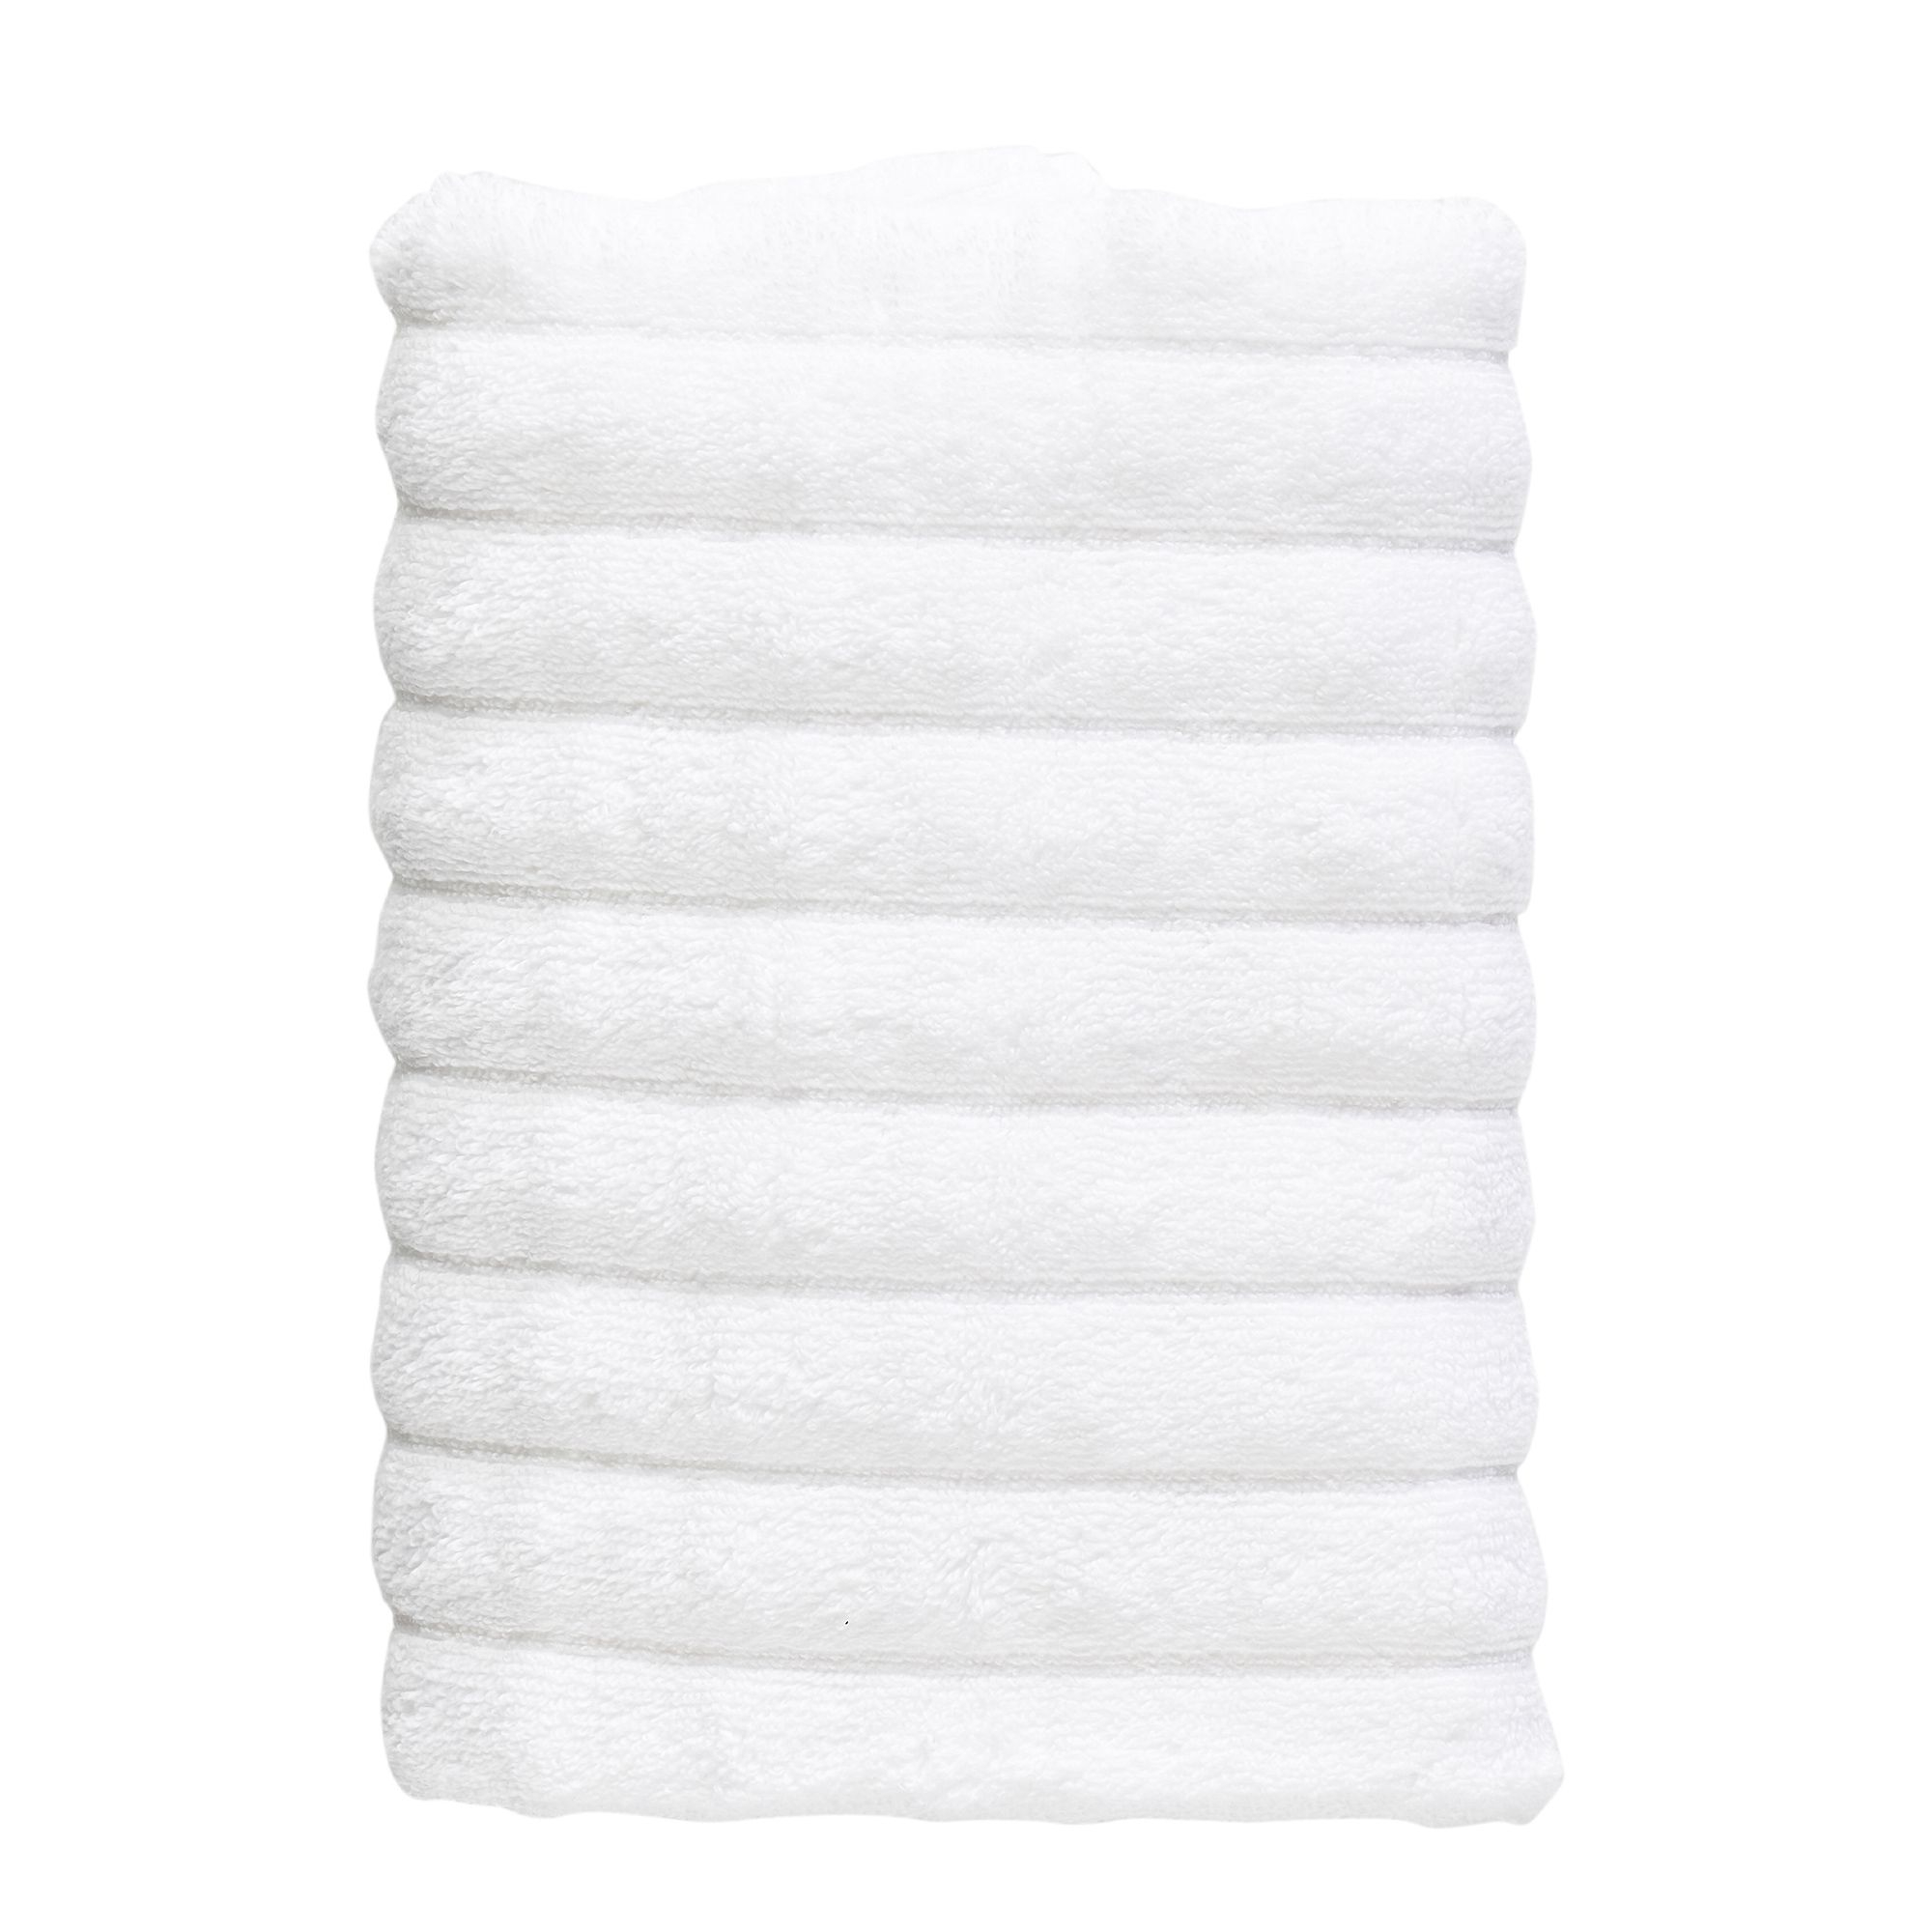 Zone - Inu Towel - 50 x 100 cm - White